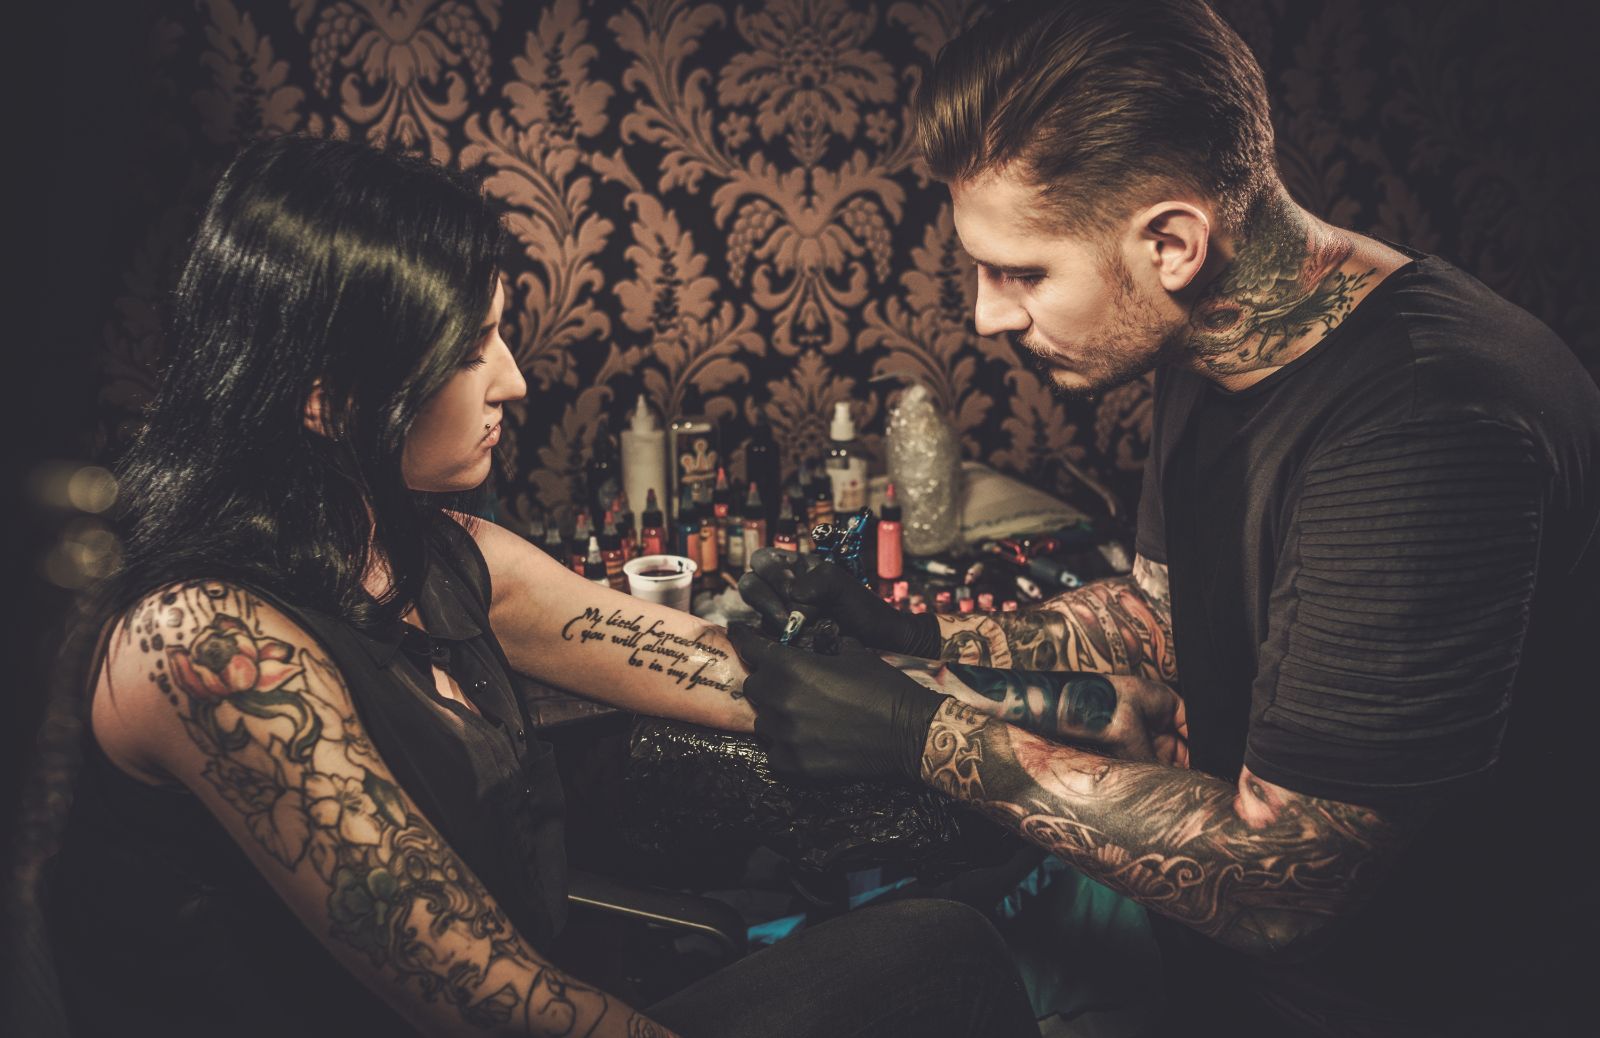 Frasi per tatuaggi: le più belle da farsi tatuare